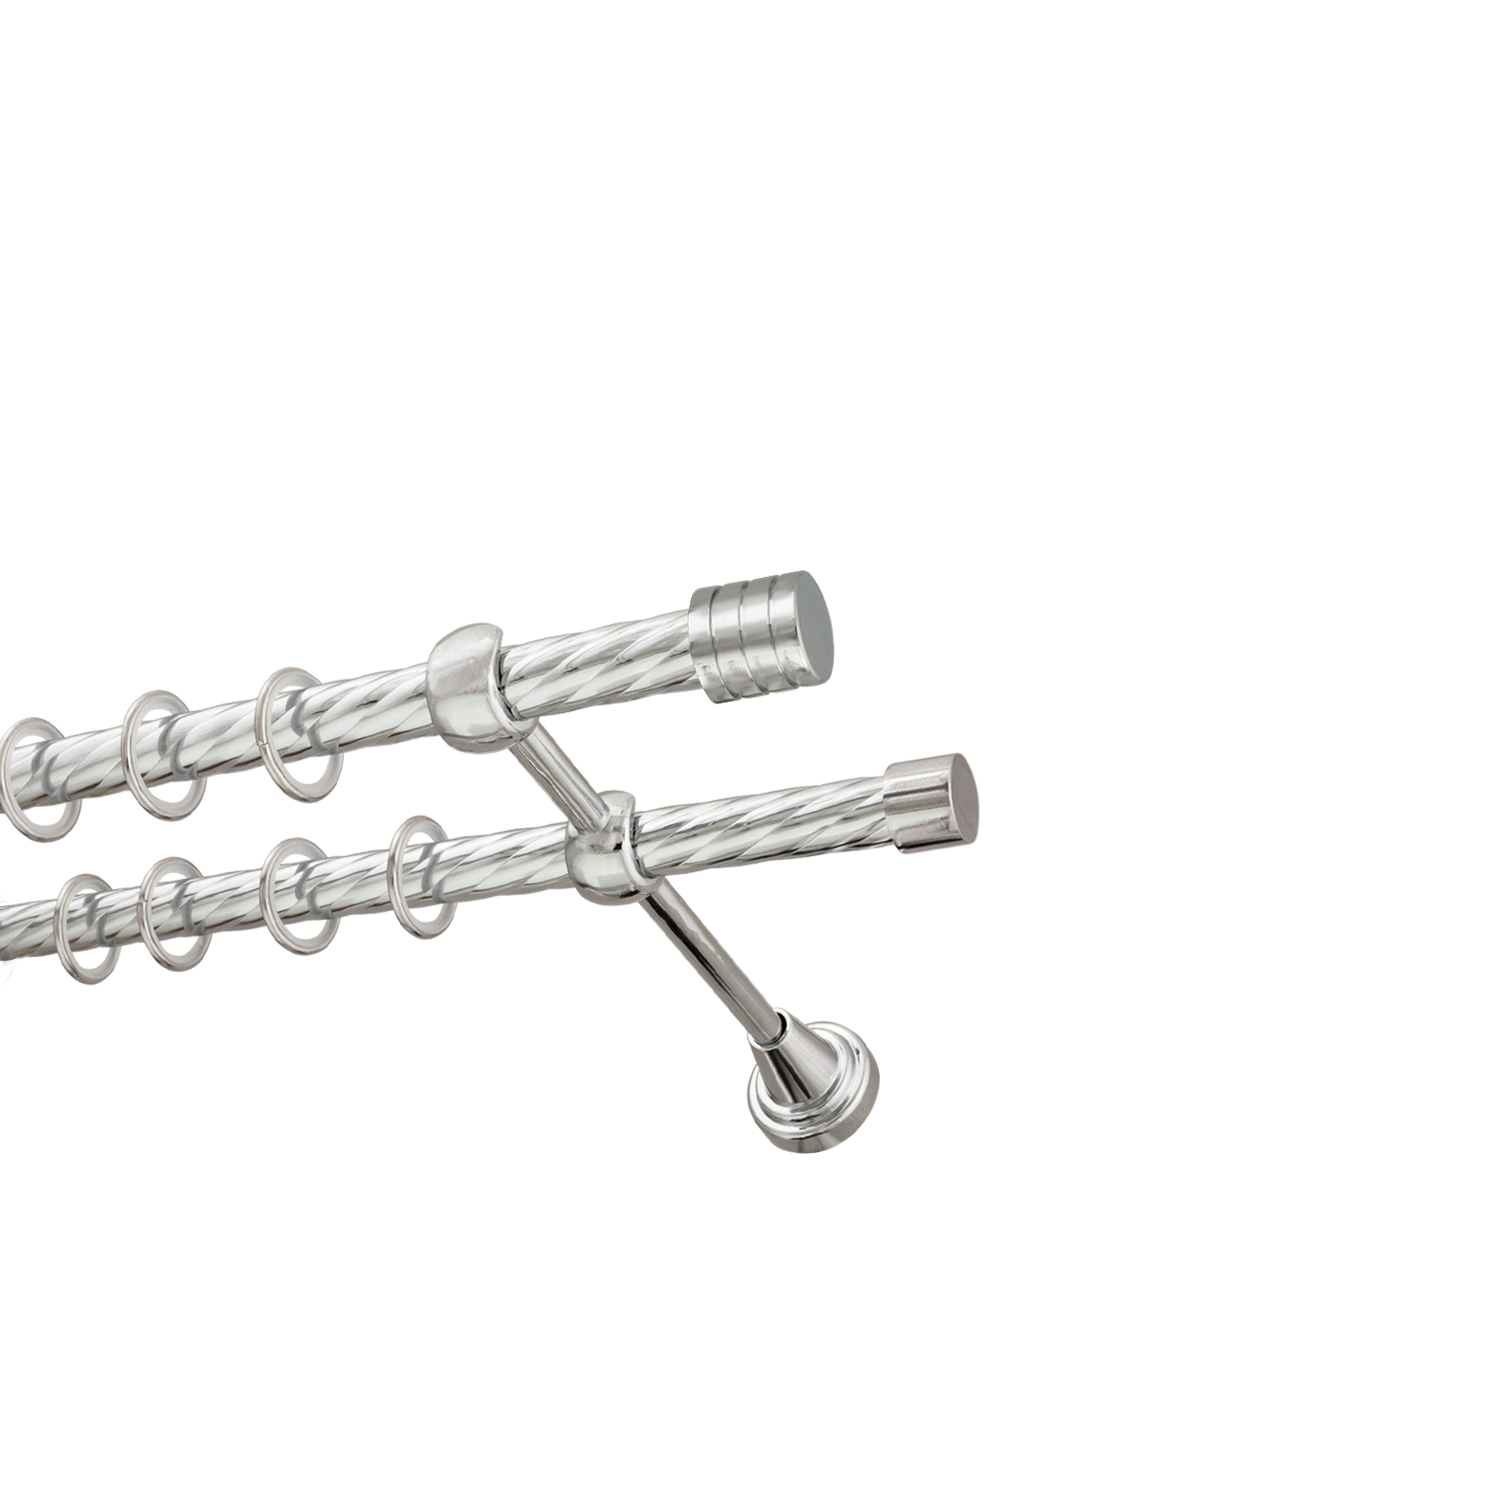 Металлический карниз для штор Подиум, двухрядный 16/16 мм, серебро, витая штанга, длина 140 см